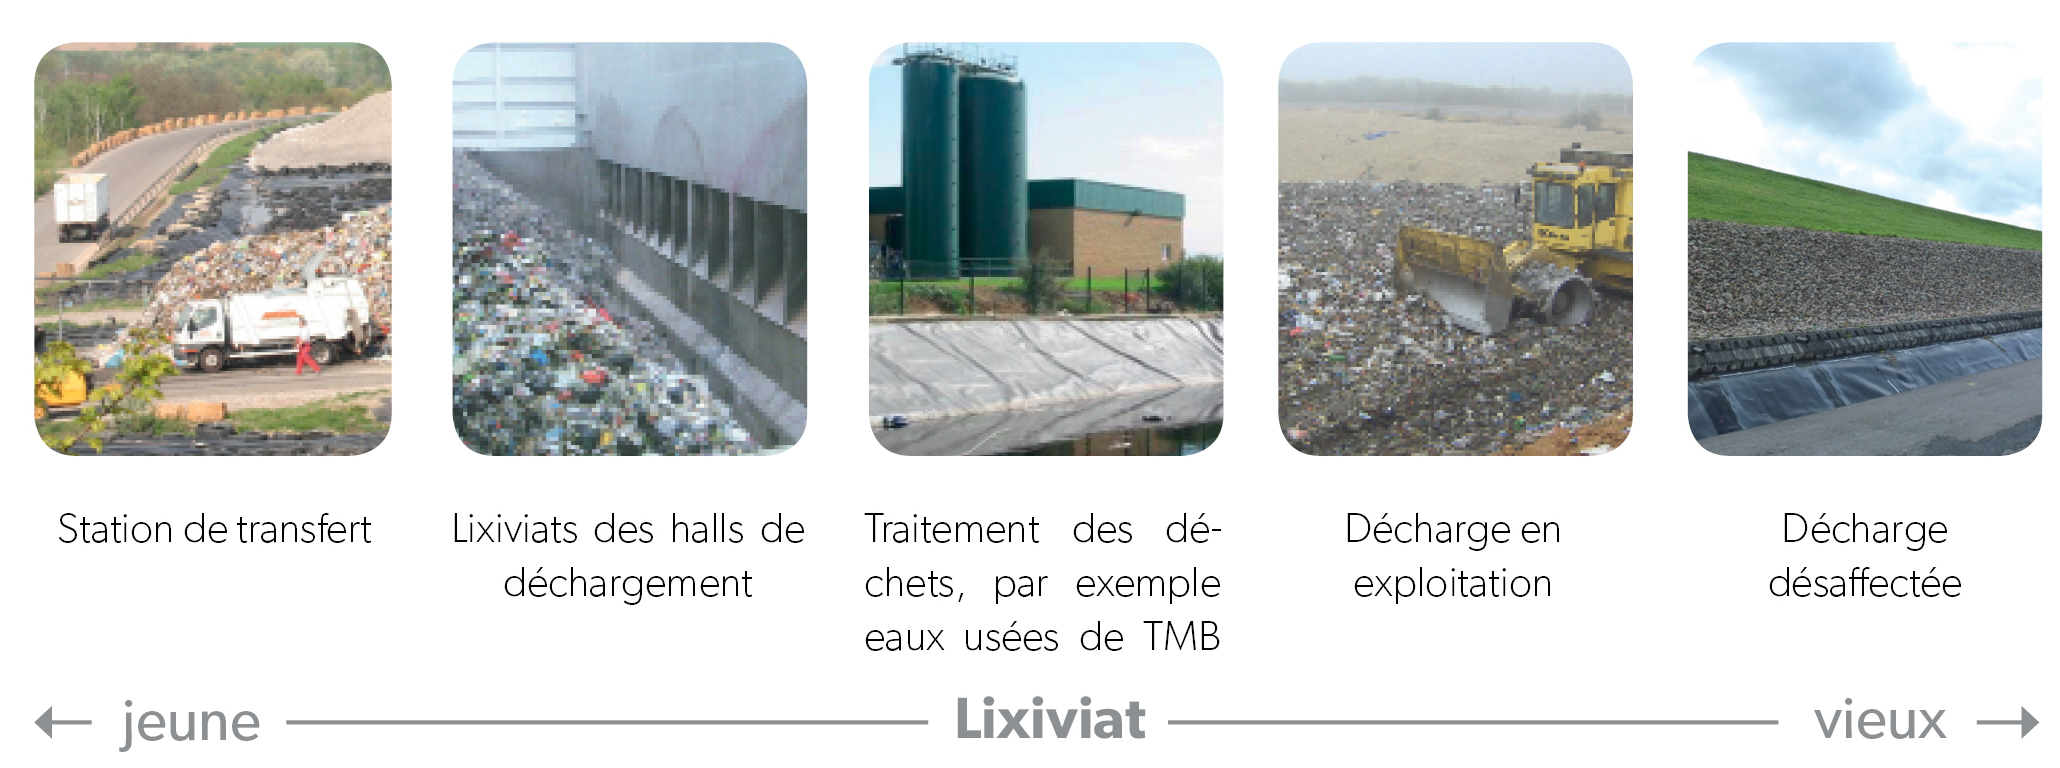 Différents effluents issus du stockage et traitement des déchets - WEHRLE